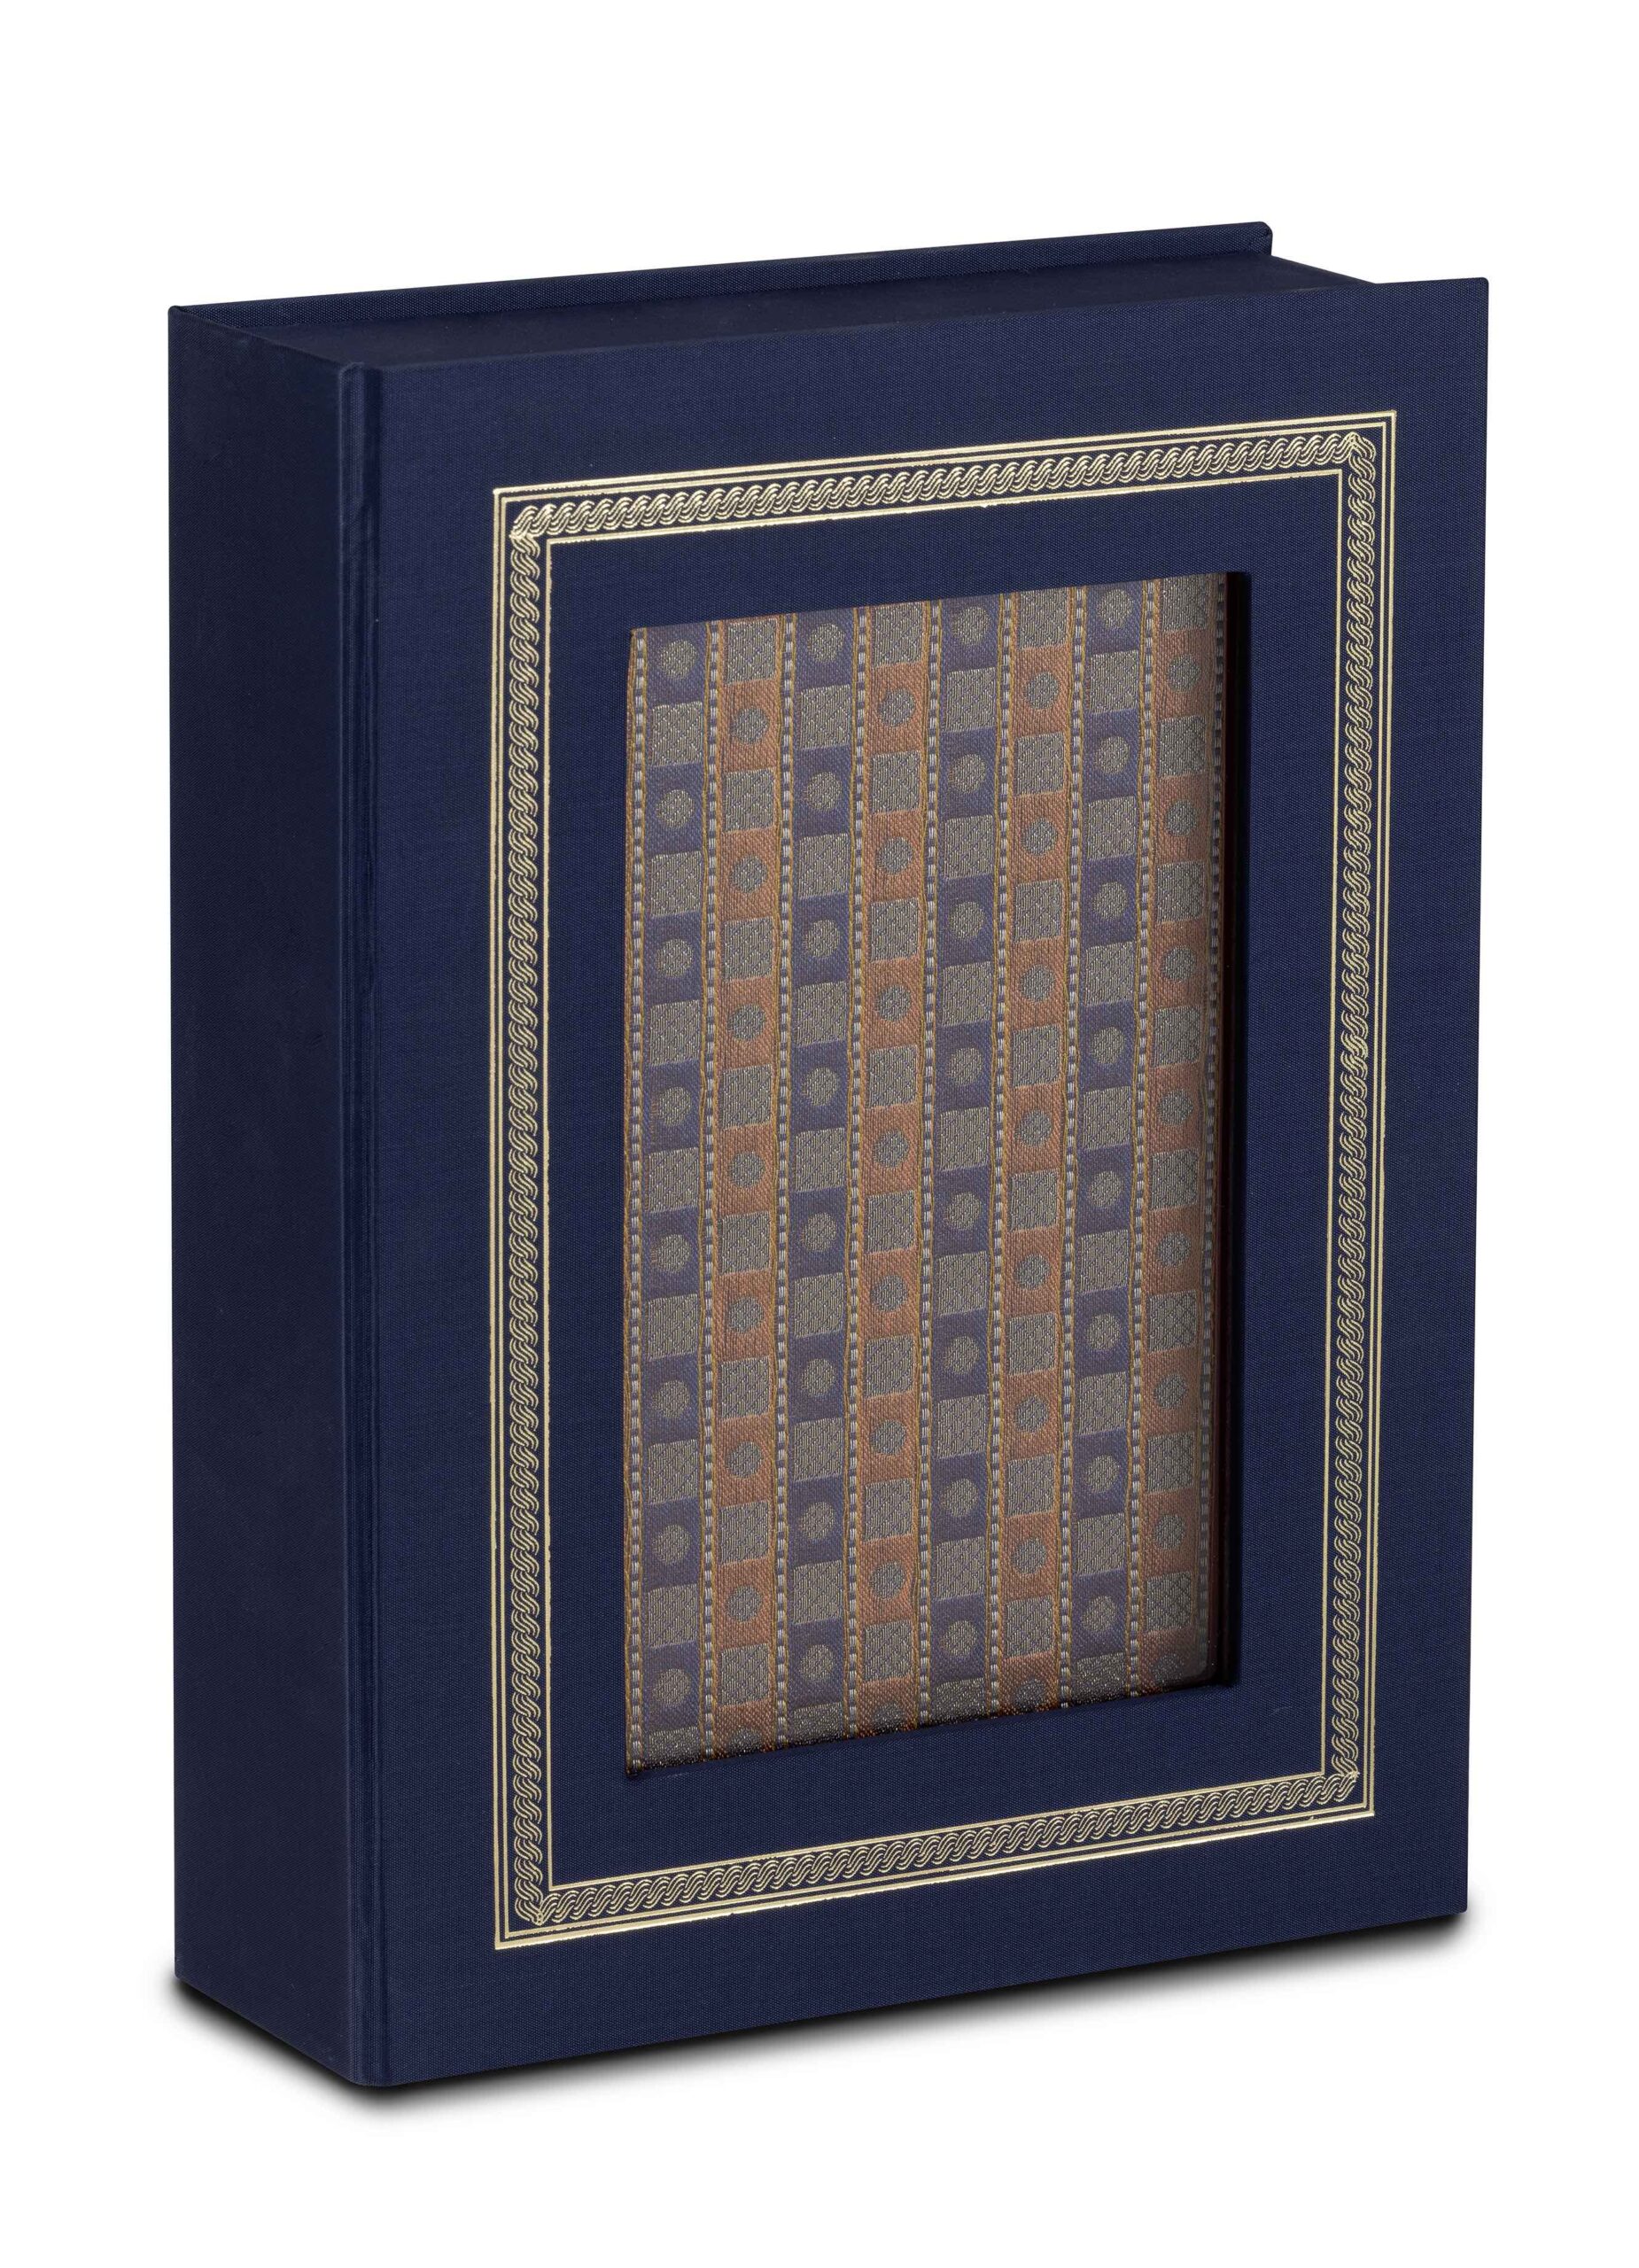 Faksimile-Ausgabe des Ulugh Begs in der blauen Luxuskassette. Das Faksimile mit edlem Ledereinband und goldbestickten Stoffintarsien befindet sich darin und man sieht die Ausgabe durch das Fenster.